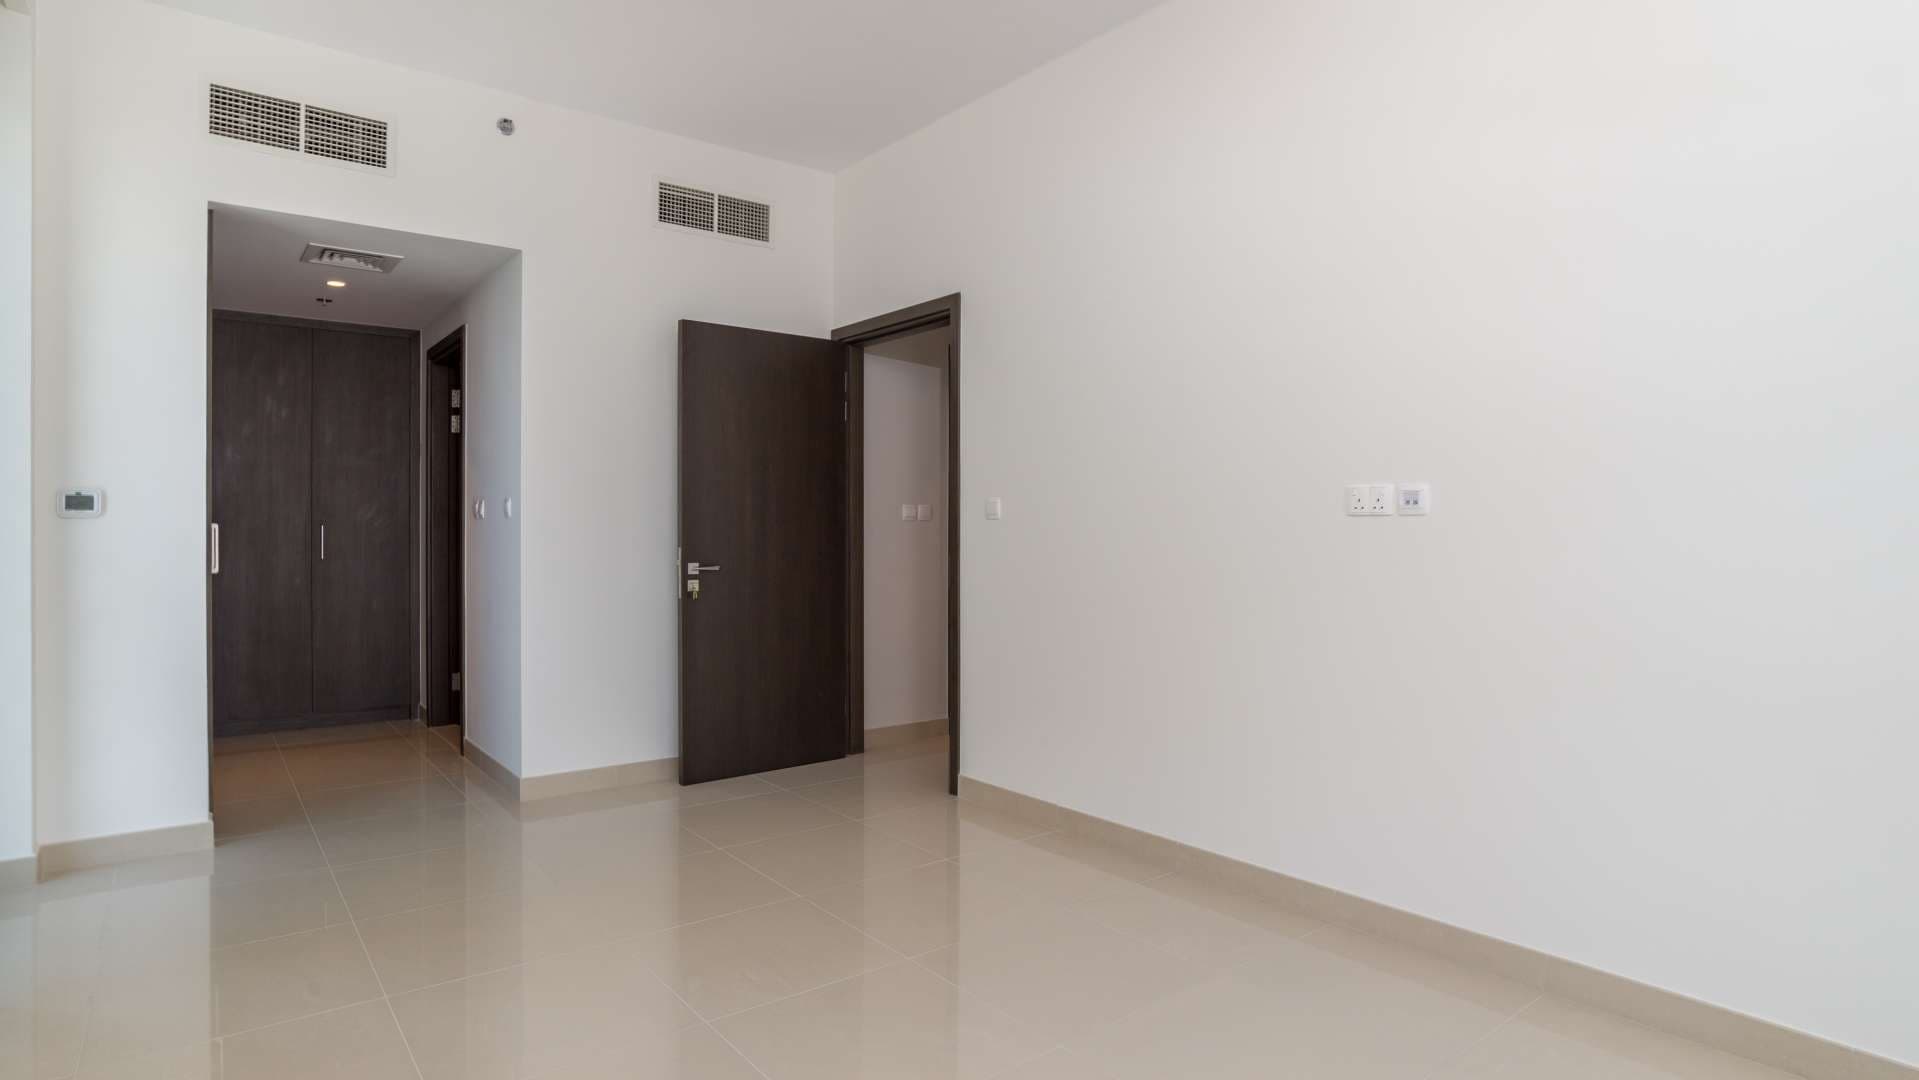 2 Bedroom Apartment For Rent Harbour Views 2 Lp07251 29cb37224c448400.jpg